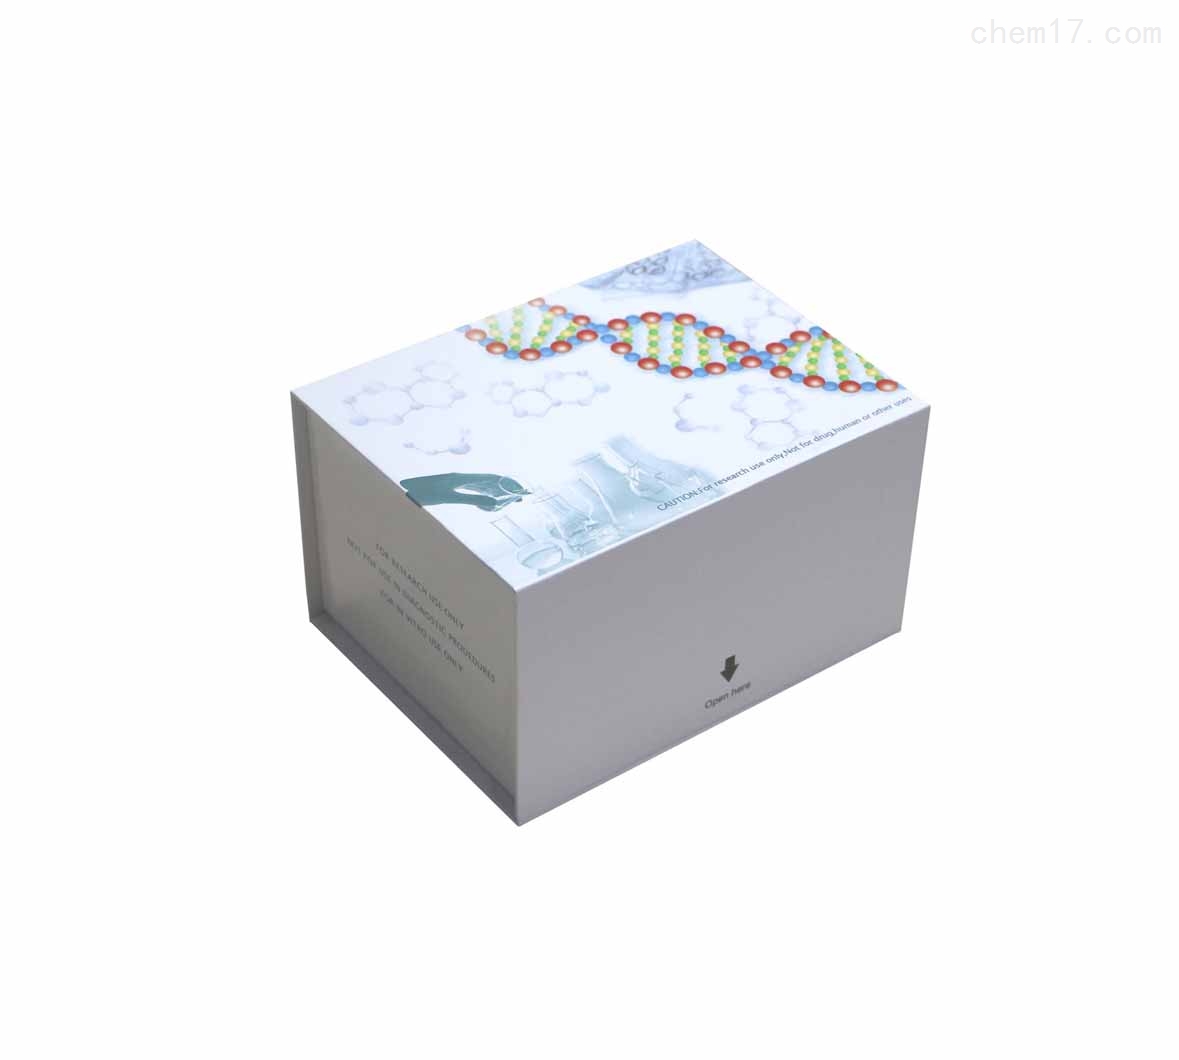 人透明质酸酶(HAase)ELISA试剂盒质量保证